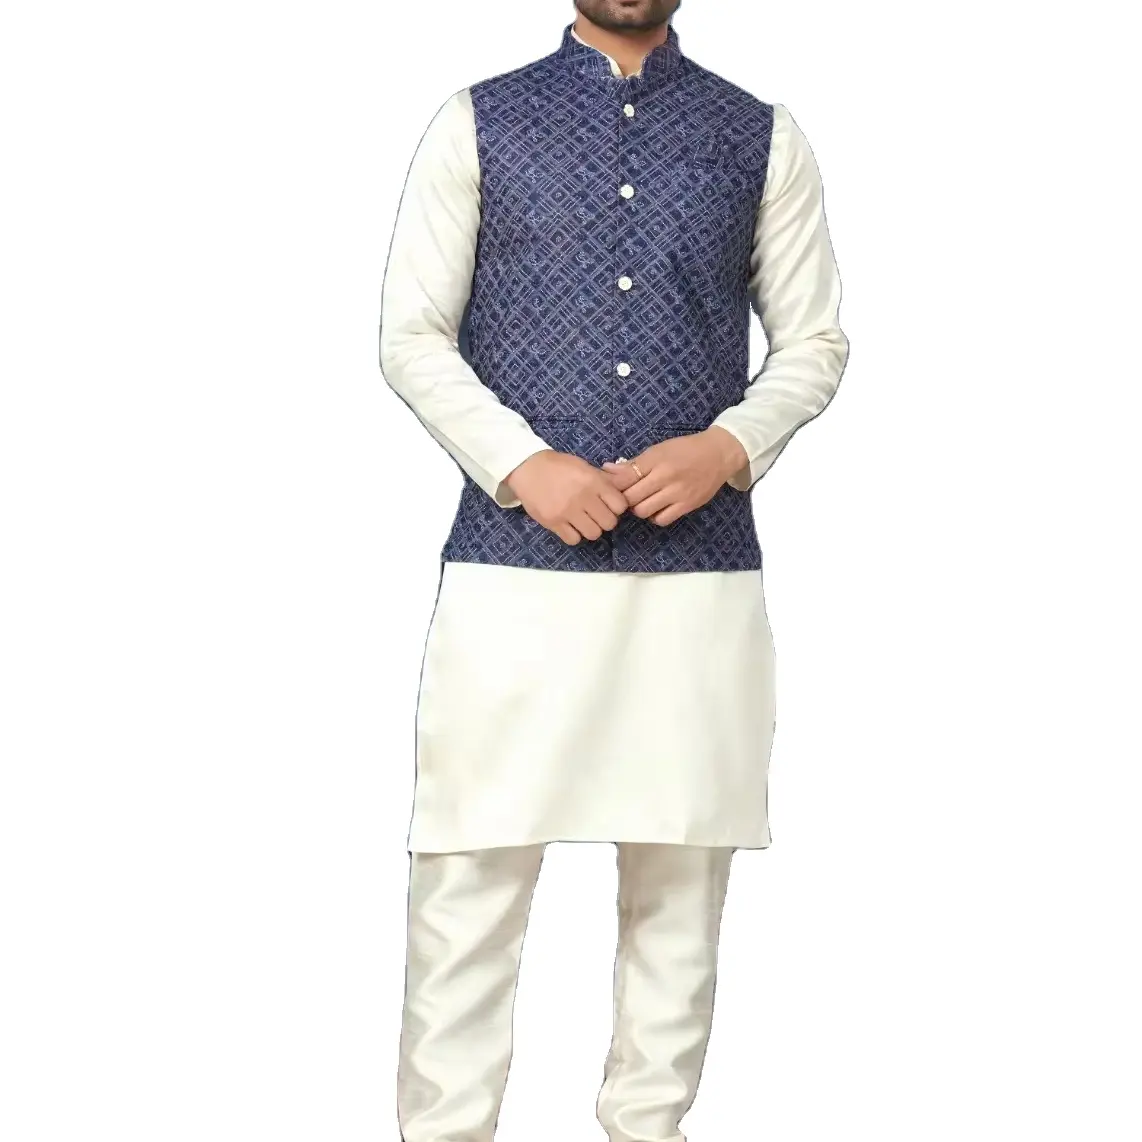 Мужская праздничная одежда, сшитая шелковая мастани-Курта-Пижама с лахнови и последовательностью, рабочая куртка, оптовая цена, экспортер из Индии